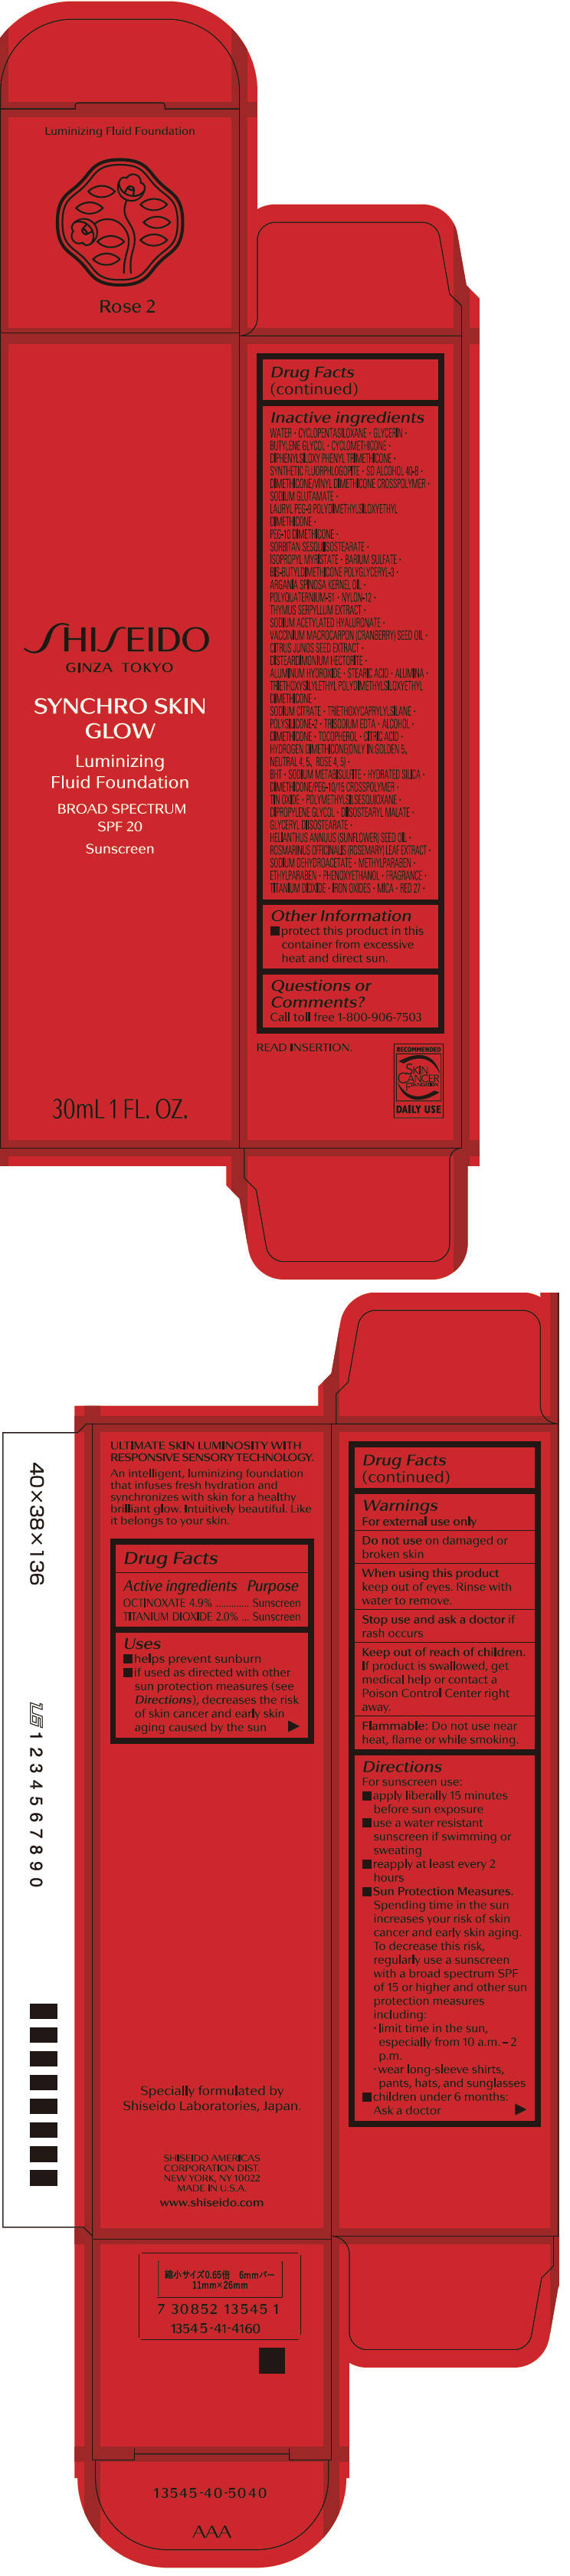 PRINCIPAL DISPLAY PANEL - 30 mL Bottle Carton - Rose 2